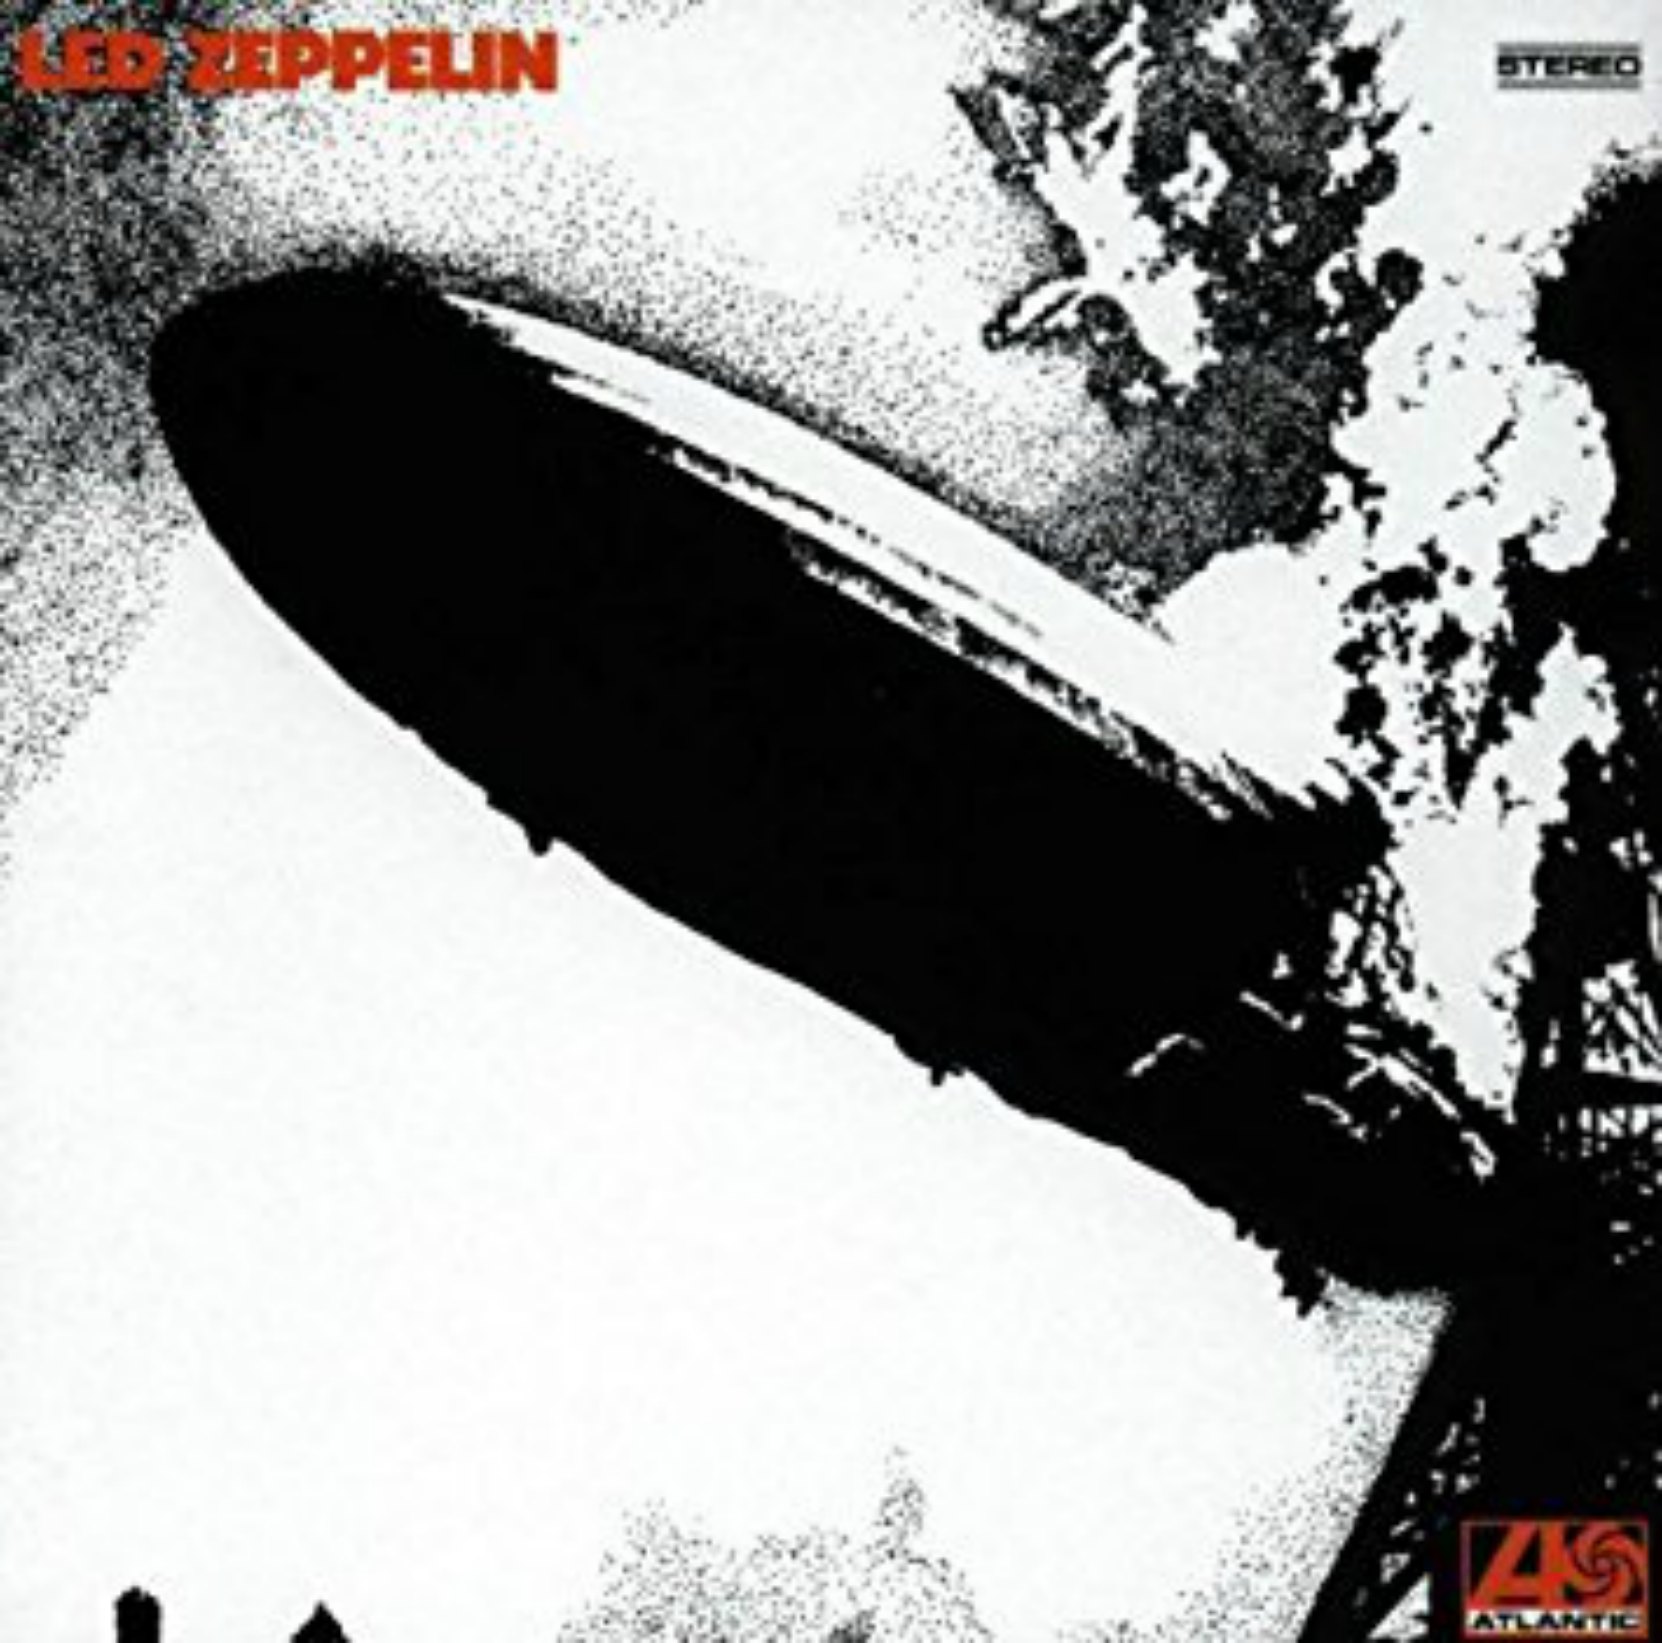 Album cover - Led Zeppelin I, released 1969